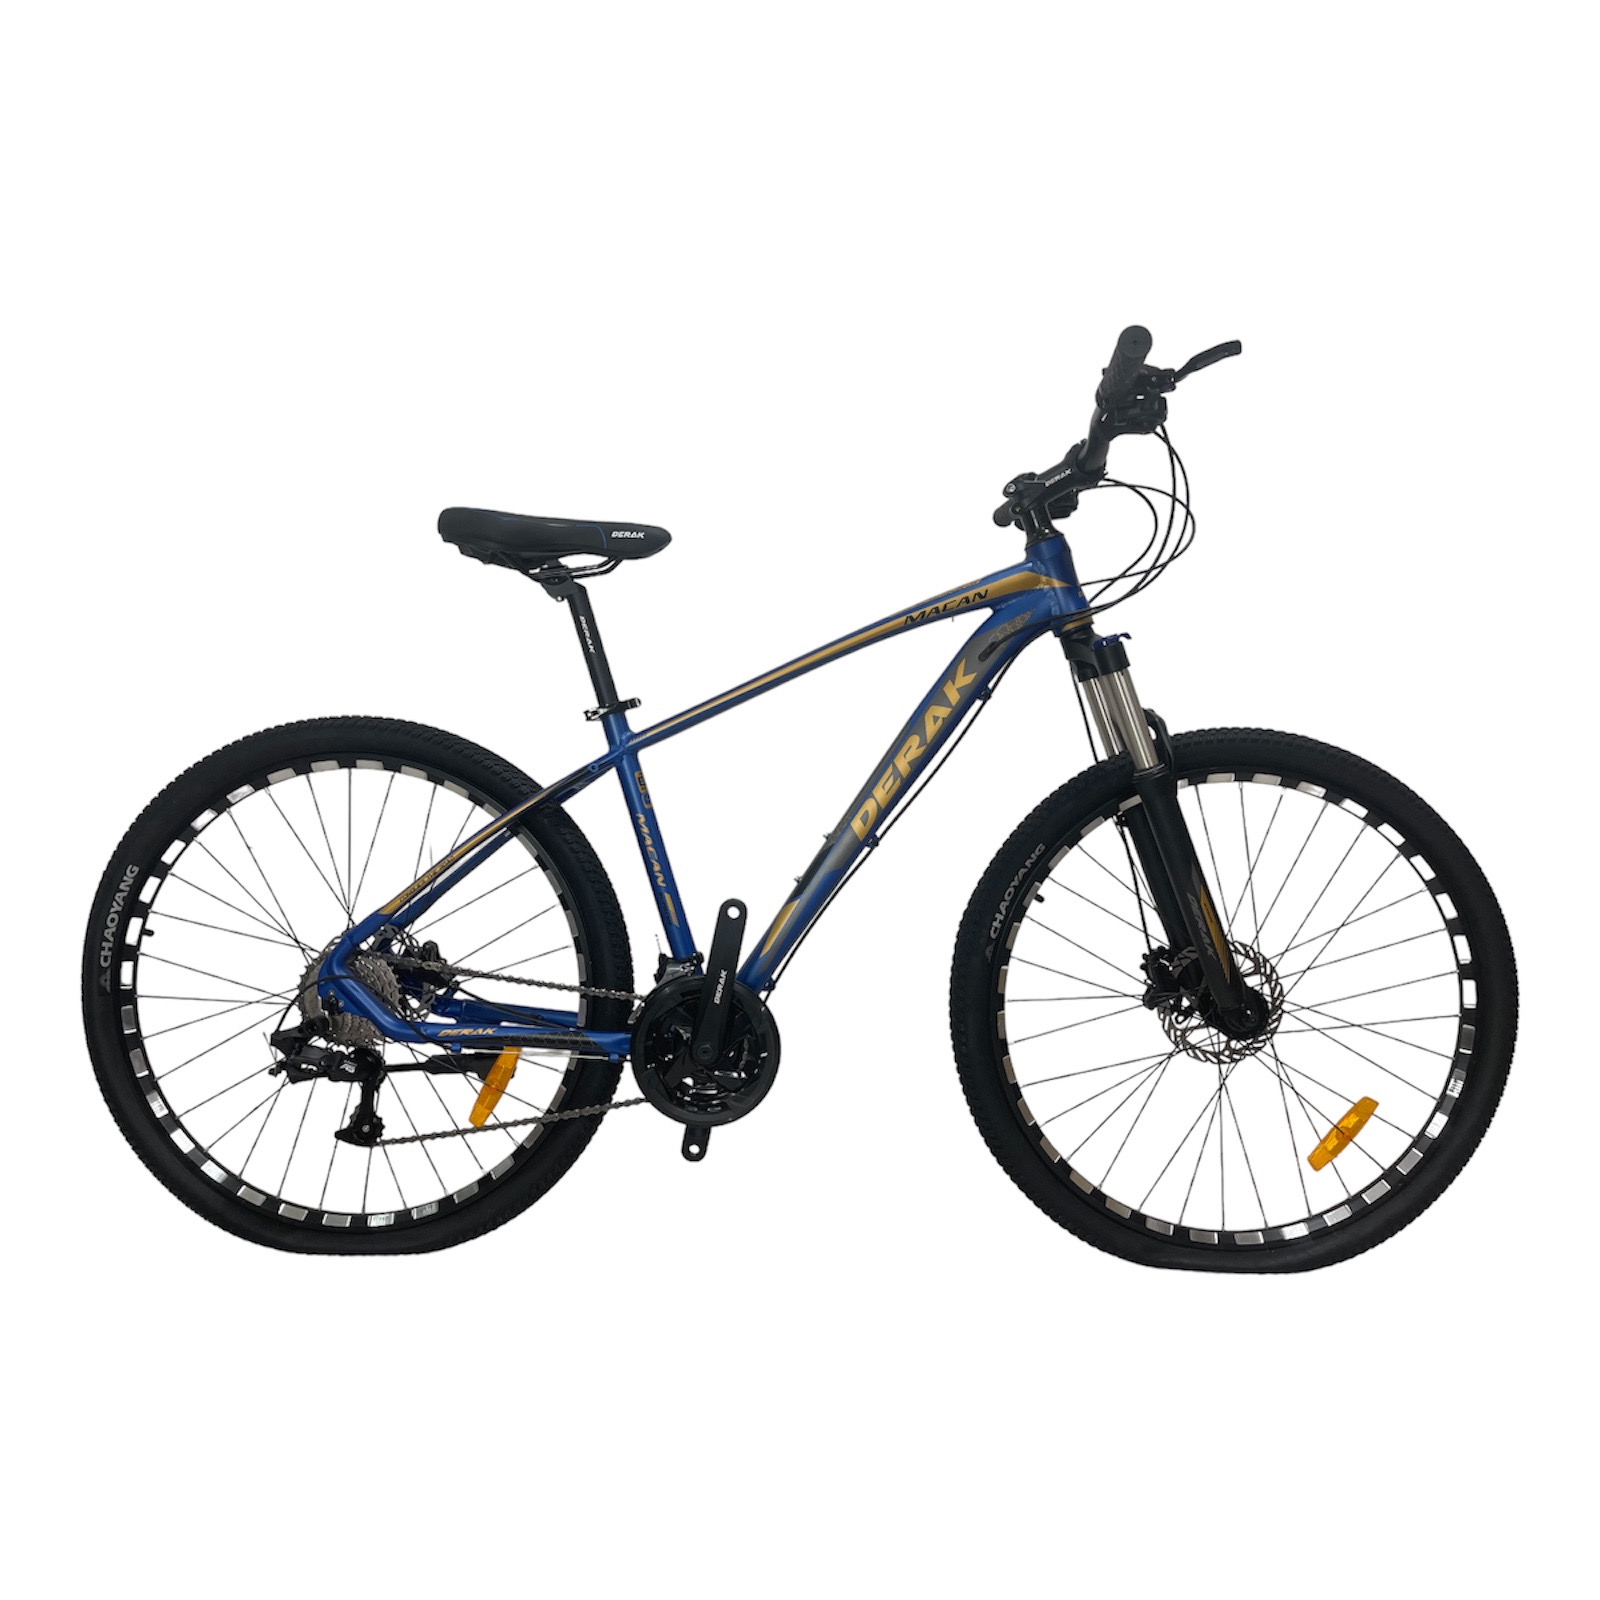 نکته خرید - قیمت روز دوچرخه کوهستان دراک مدل ماکان سایز طوقه 27.5 خرید